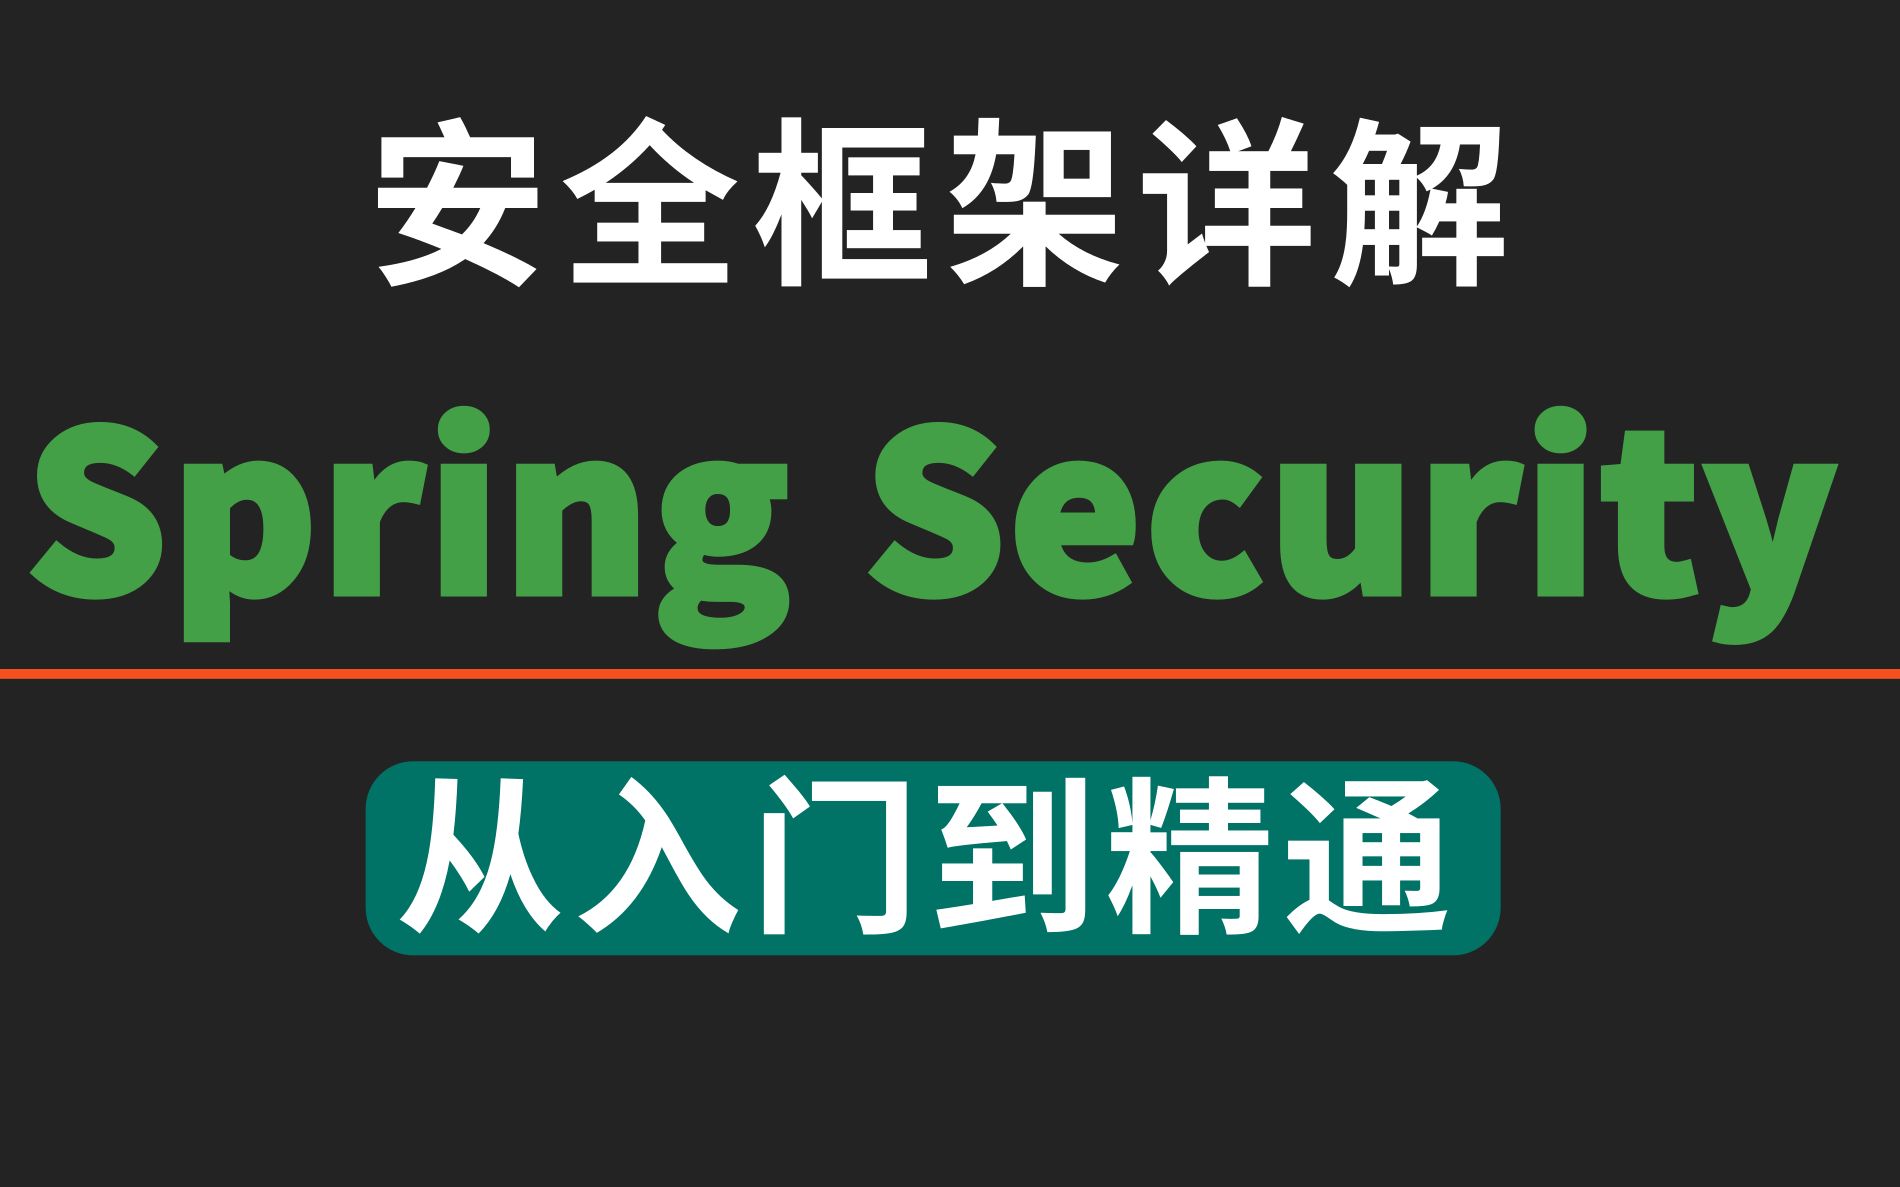 B站最强安全框架视频教程 SpringSecurity+JWT SpringSecurity安全框架_SpringSecurity_RBAC